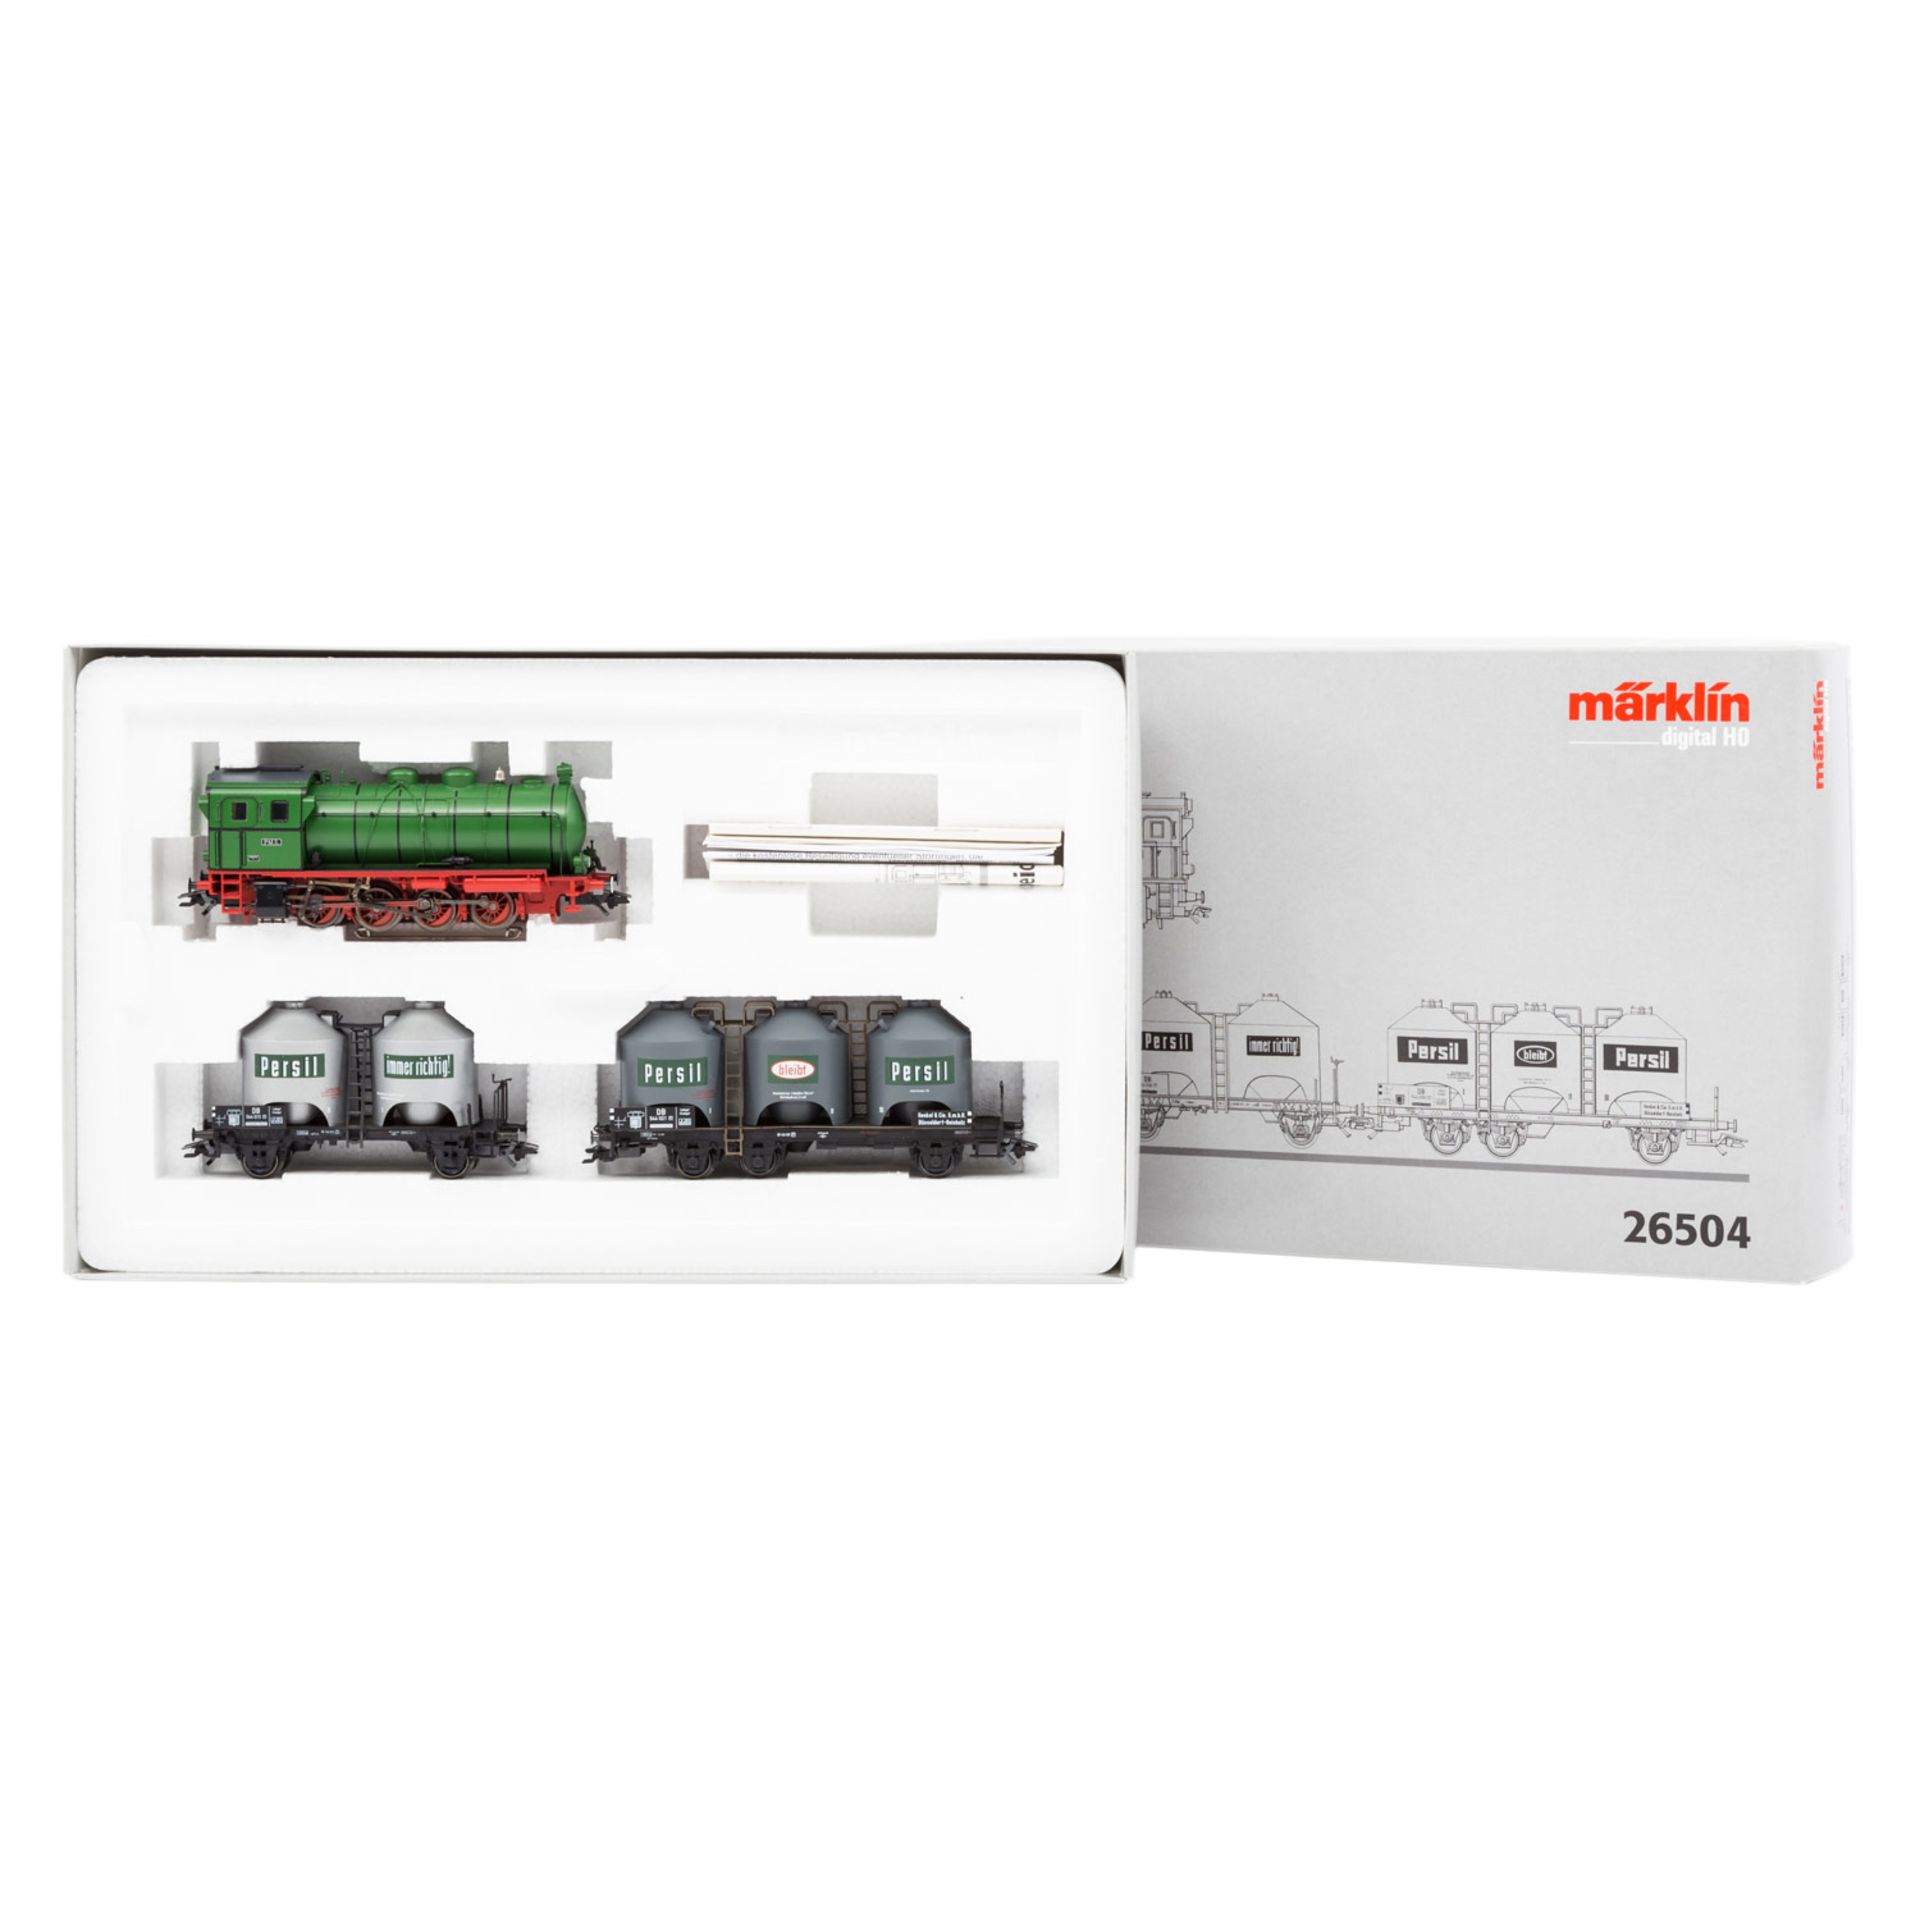 MÄRKLIN Zugpackung "Henkel" 26504, Spur H0 digital, bestehend aus grüner Dampfspeicherlok bez. "